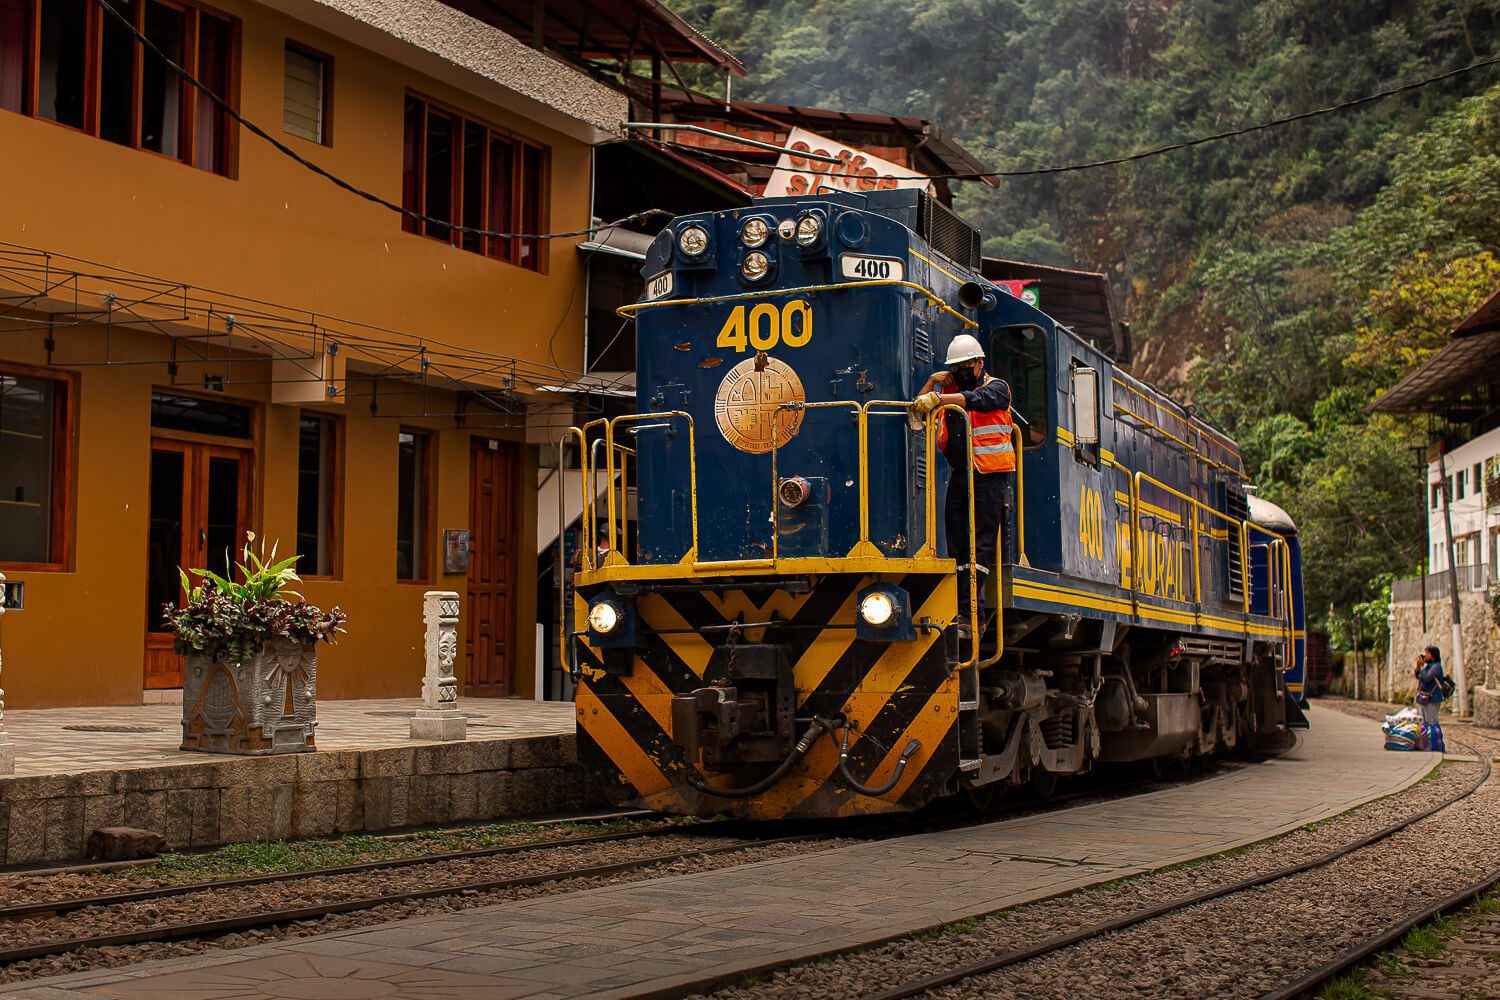 The train coming into Aguas Calientes, Peru